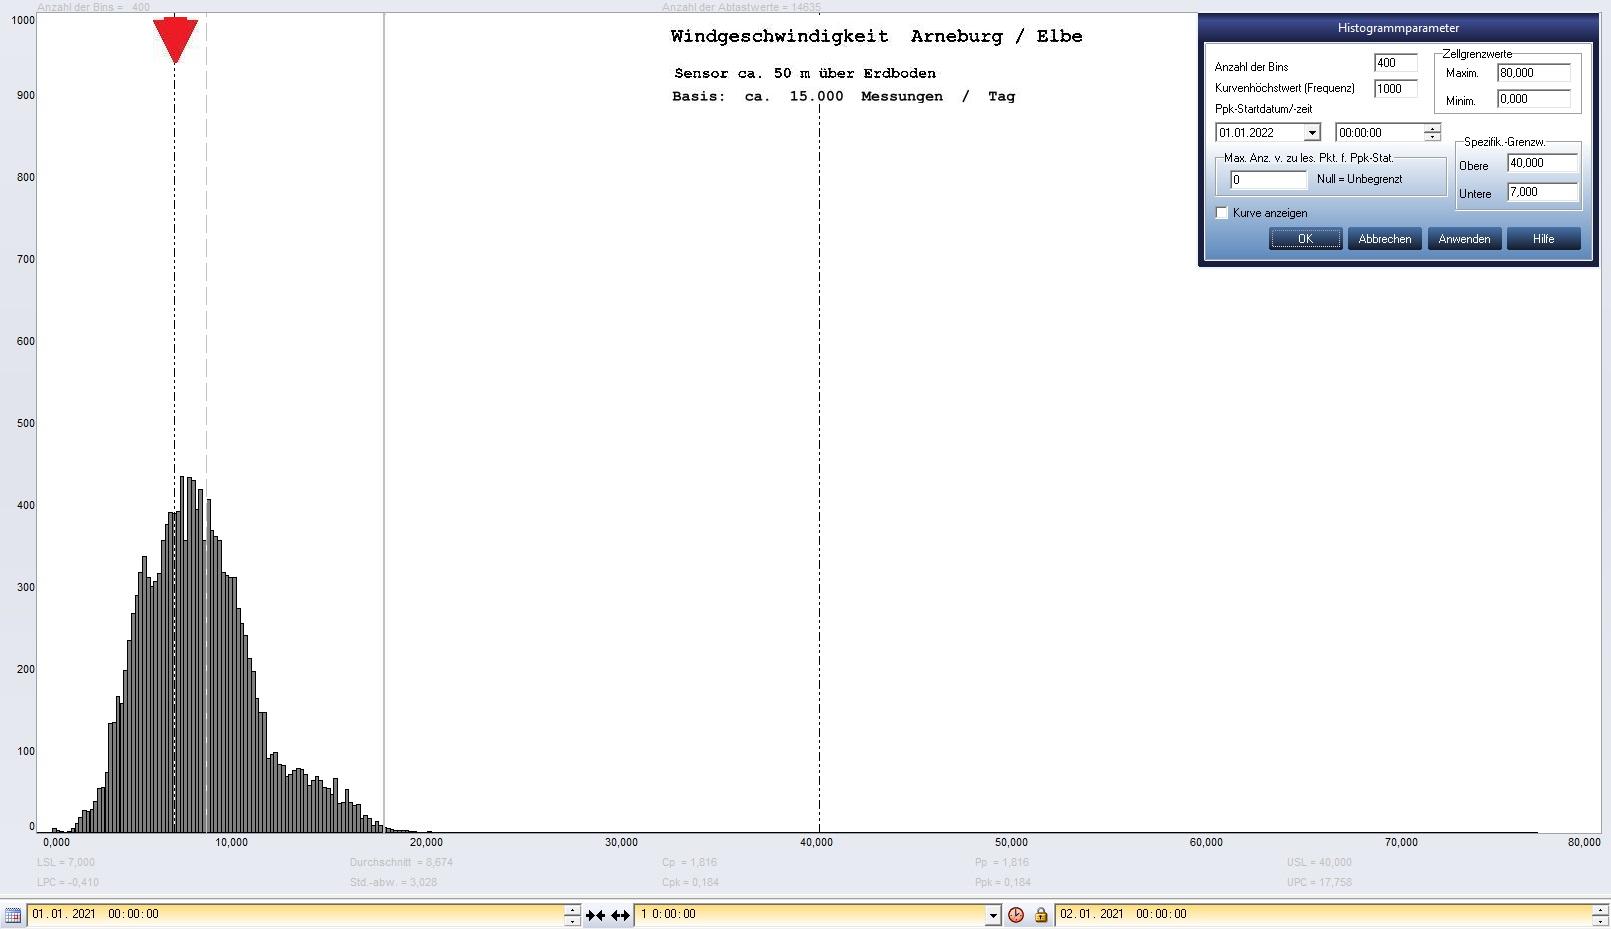 Arneburg Tages-Histogramm Winddaten, 01.01.2021
  Histogramm, Sensor auf Gebude, ca. 50 m ber Erdboden, Basis: 5s-Aufzeichnung